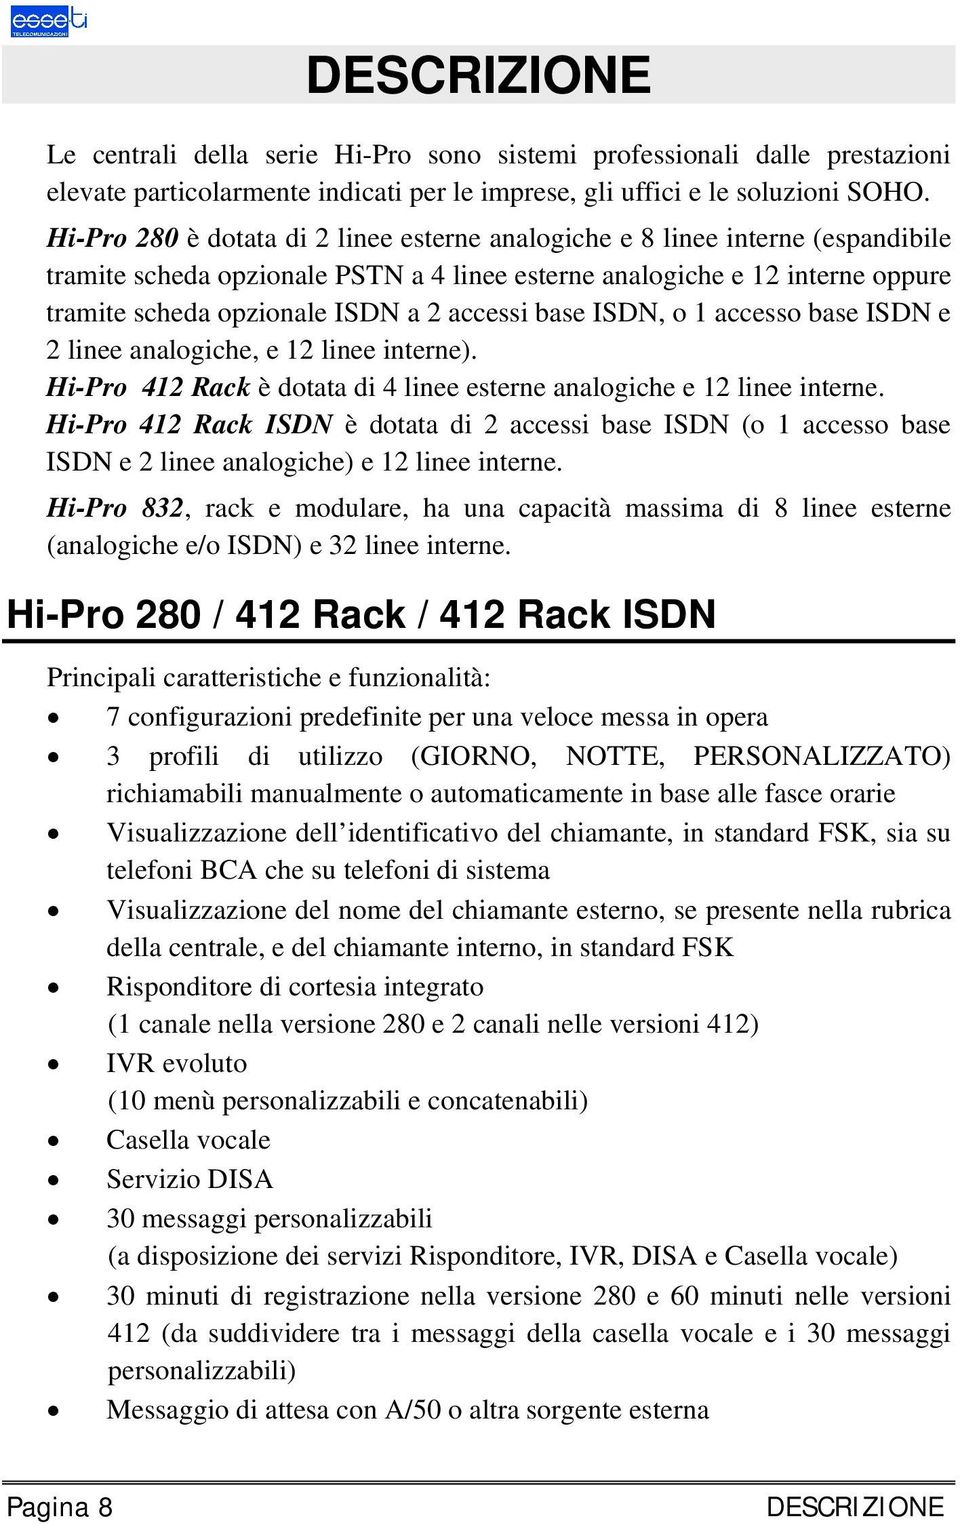 accessi base ISDN, o 1 accesso base ISDN e 2 linee analogiche, e 12 linee interne). Hi-Pro 412 Rack è dotata di 4 linee esterne analogiche e 12 linee interne.